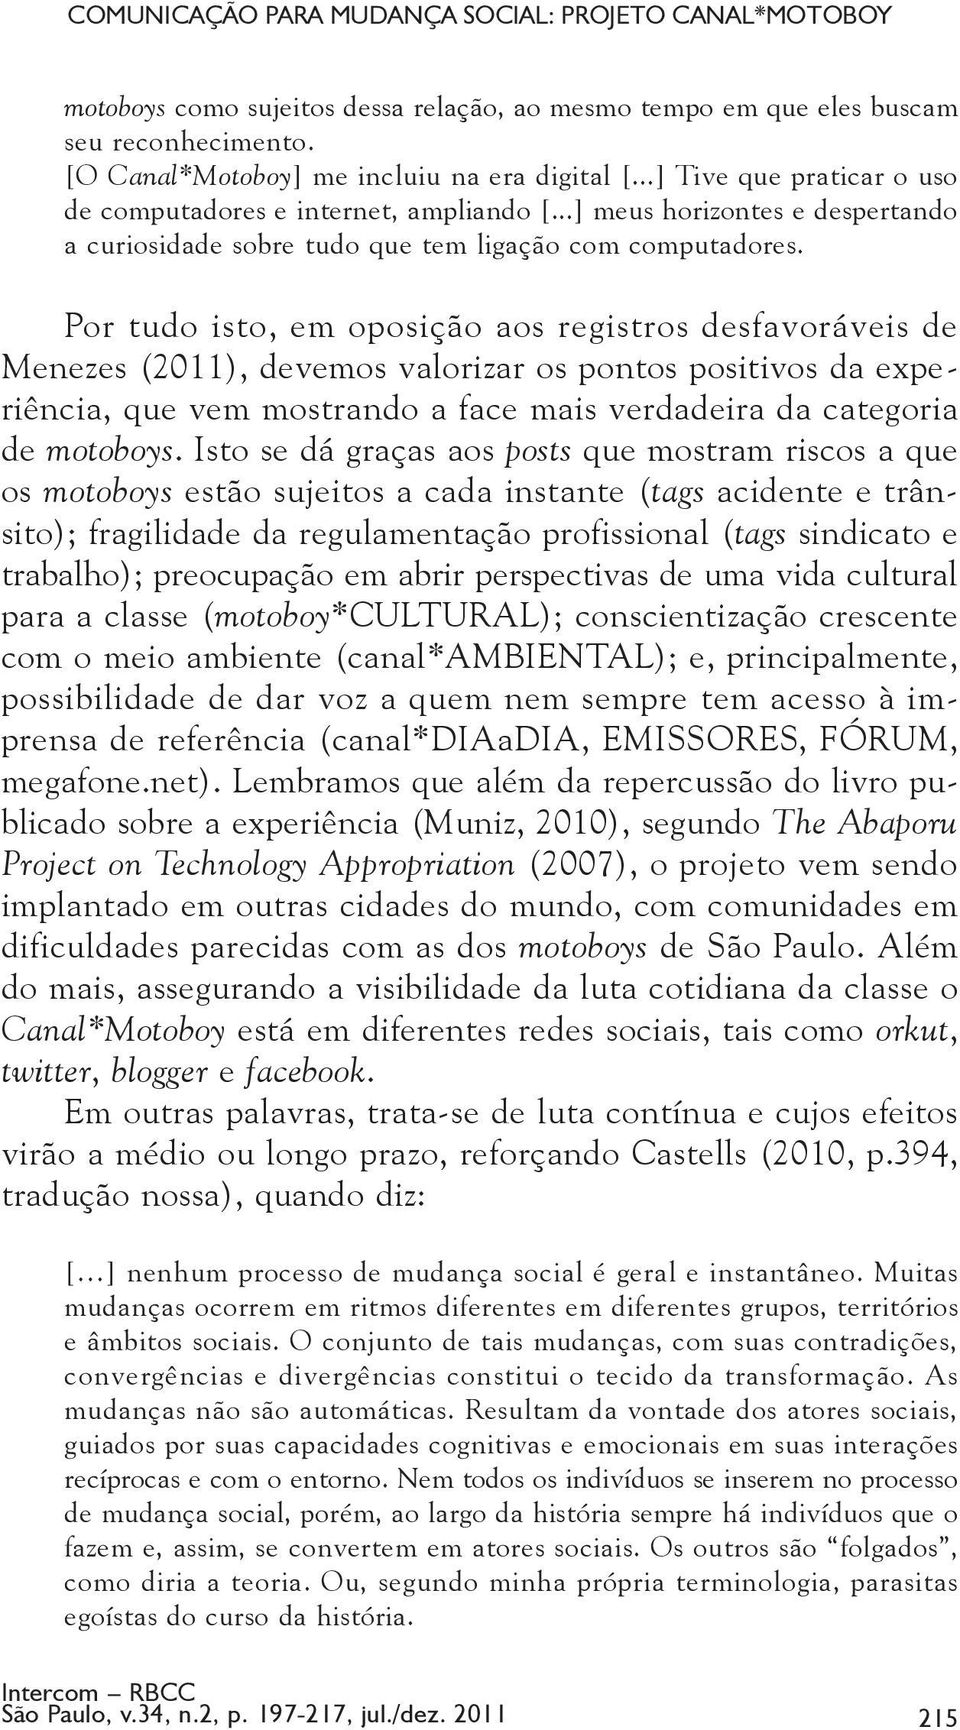 Por tudo isto, em oposição aos registros desfavoráveis de Menezes (2011), devemos valorizar os pontos positivos da experiência, que vem mostrando a face mais verdadeira da categoria de motoboys.